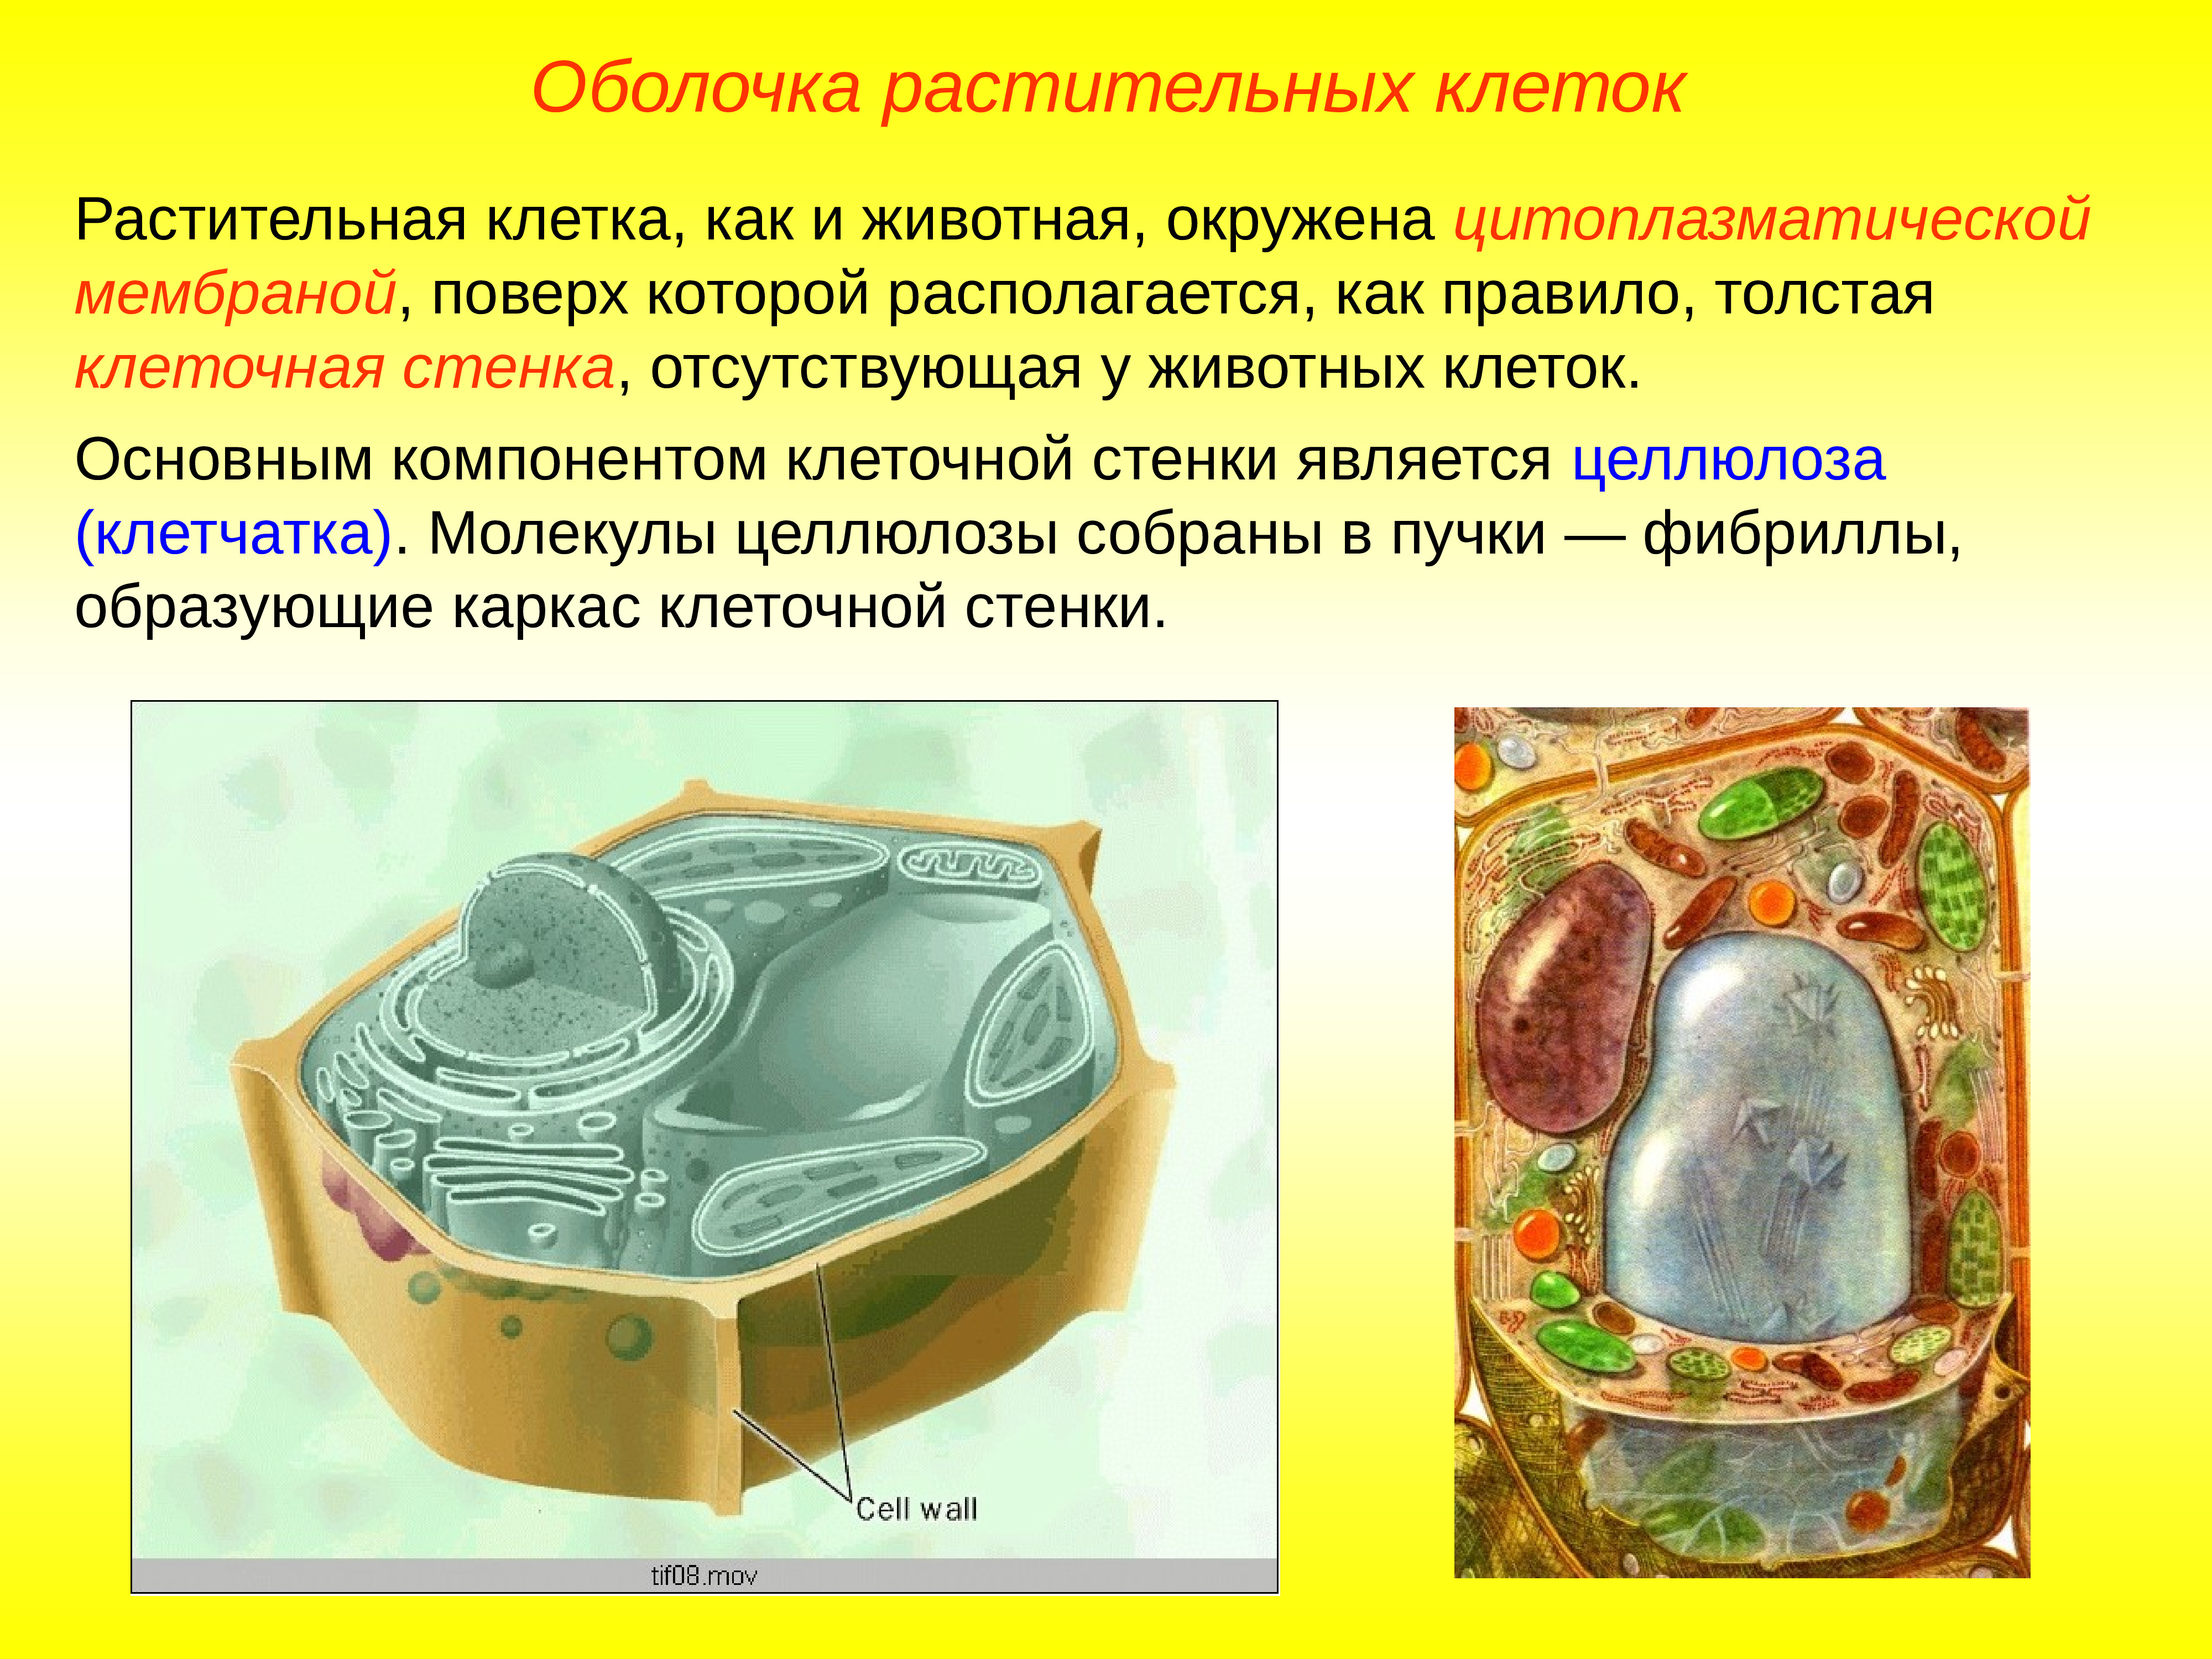 Стенка растительной клетки содержит. Строение растительной клетки: оболочка строение. Оболочка растительной клетки состоит. Строение клеточкой оболочки растительной клетки. Строение мембраны растительной клетки.